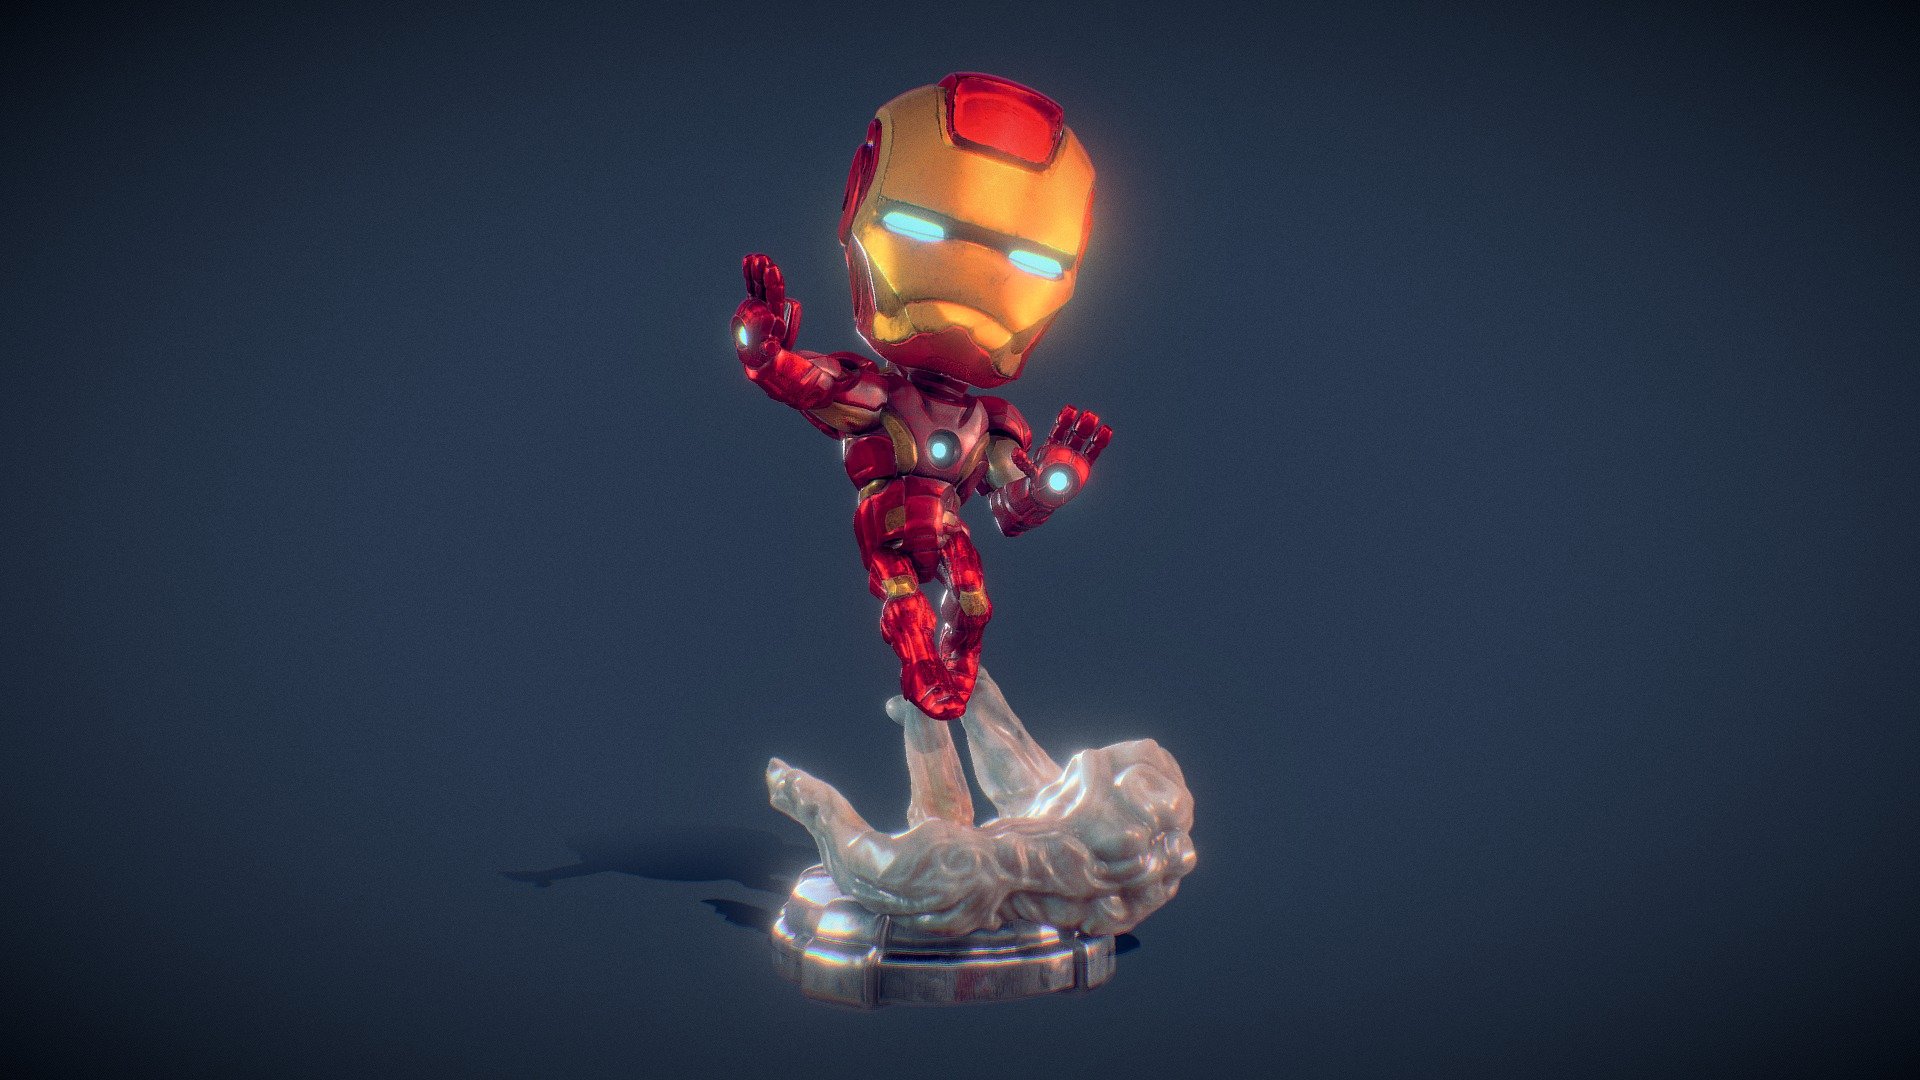 Chibi Iron Man model by Indrasmoroaji [ef5b8b0]